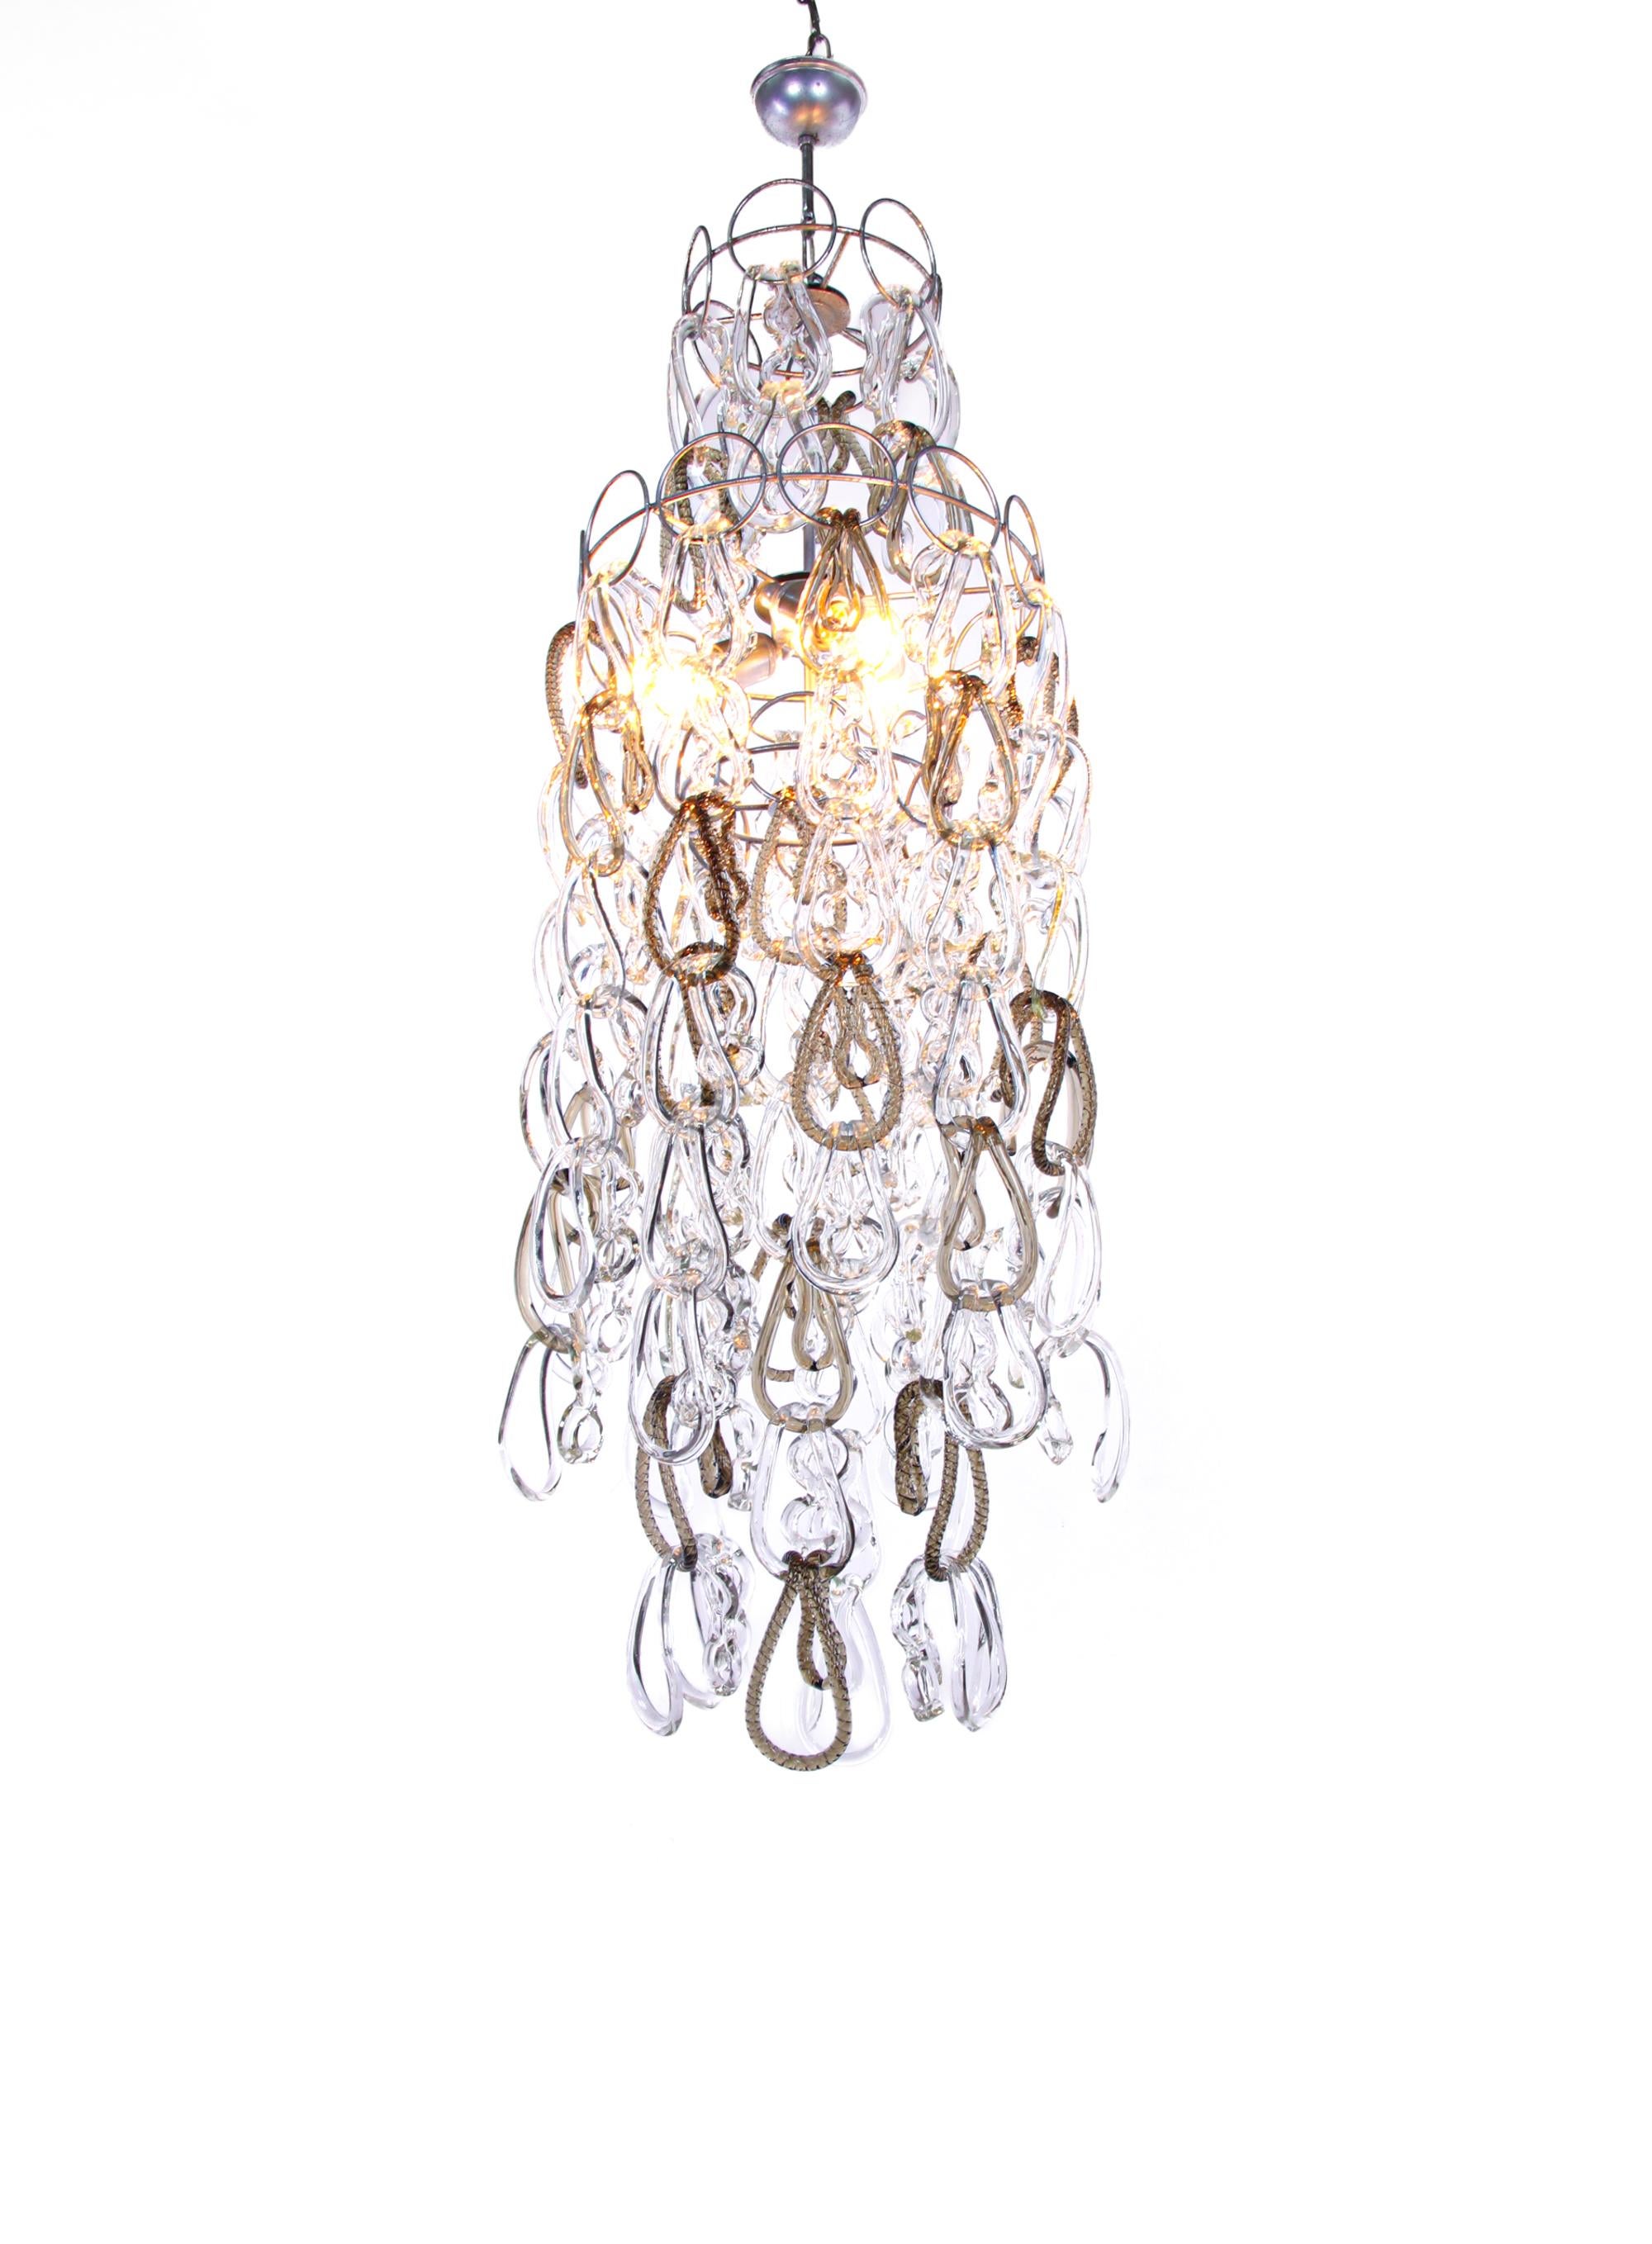 Imposant lustre cascade Giogali avec de nombreux verres de Murano transparents et ambrés entrelacés sur une armature métallique. Les 90 verres clairs et les 25 verres ambrés de Murano peuvent être disposés individuellement, ce qui permet d'adapter